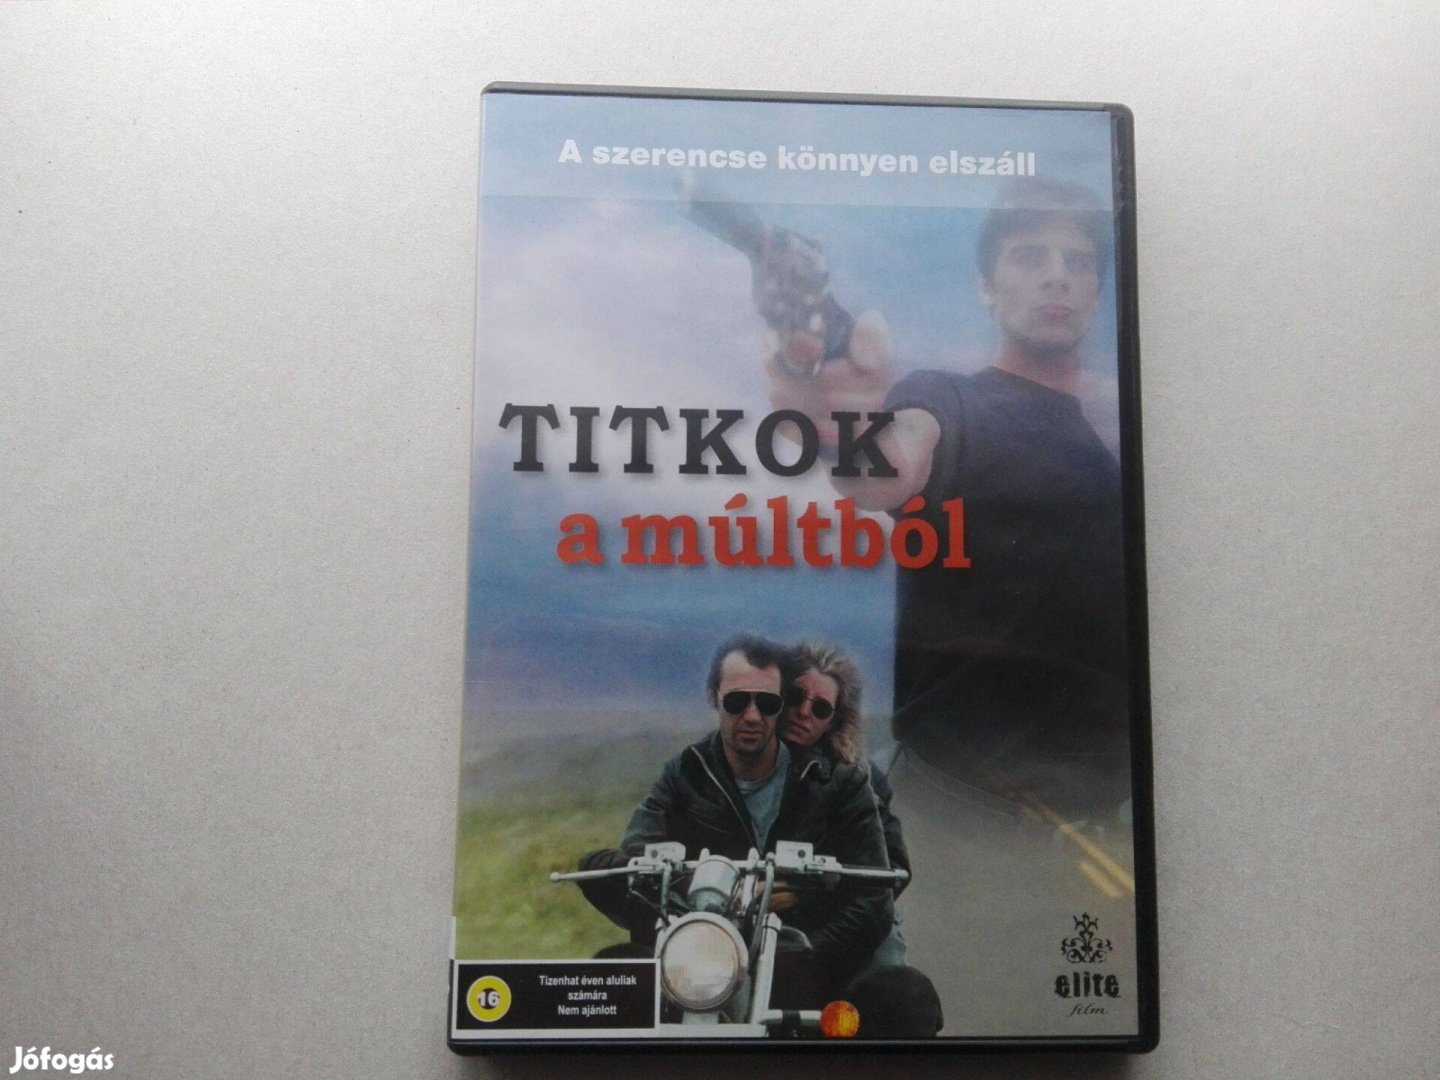 Titkok a múltból c.teljesen új, magyar nyelvű DVD film eladó